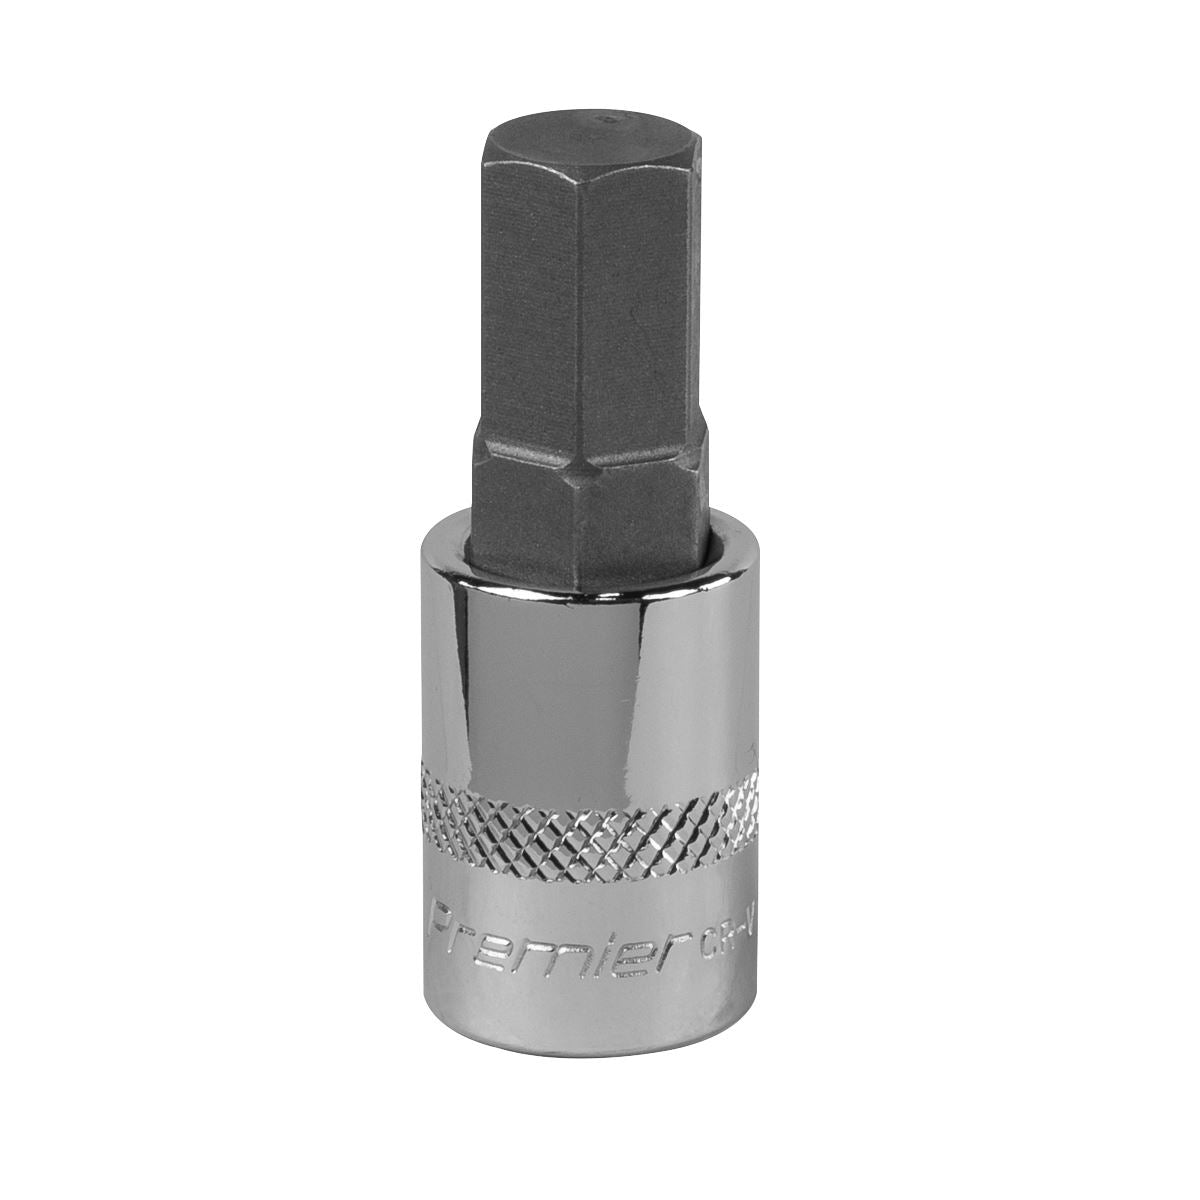 Sealey Premier Hex Socket Bit 11mm 3/8"Sq Drive